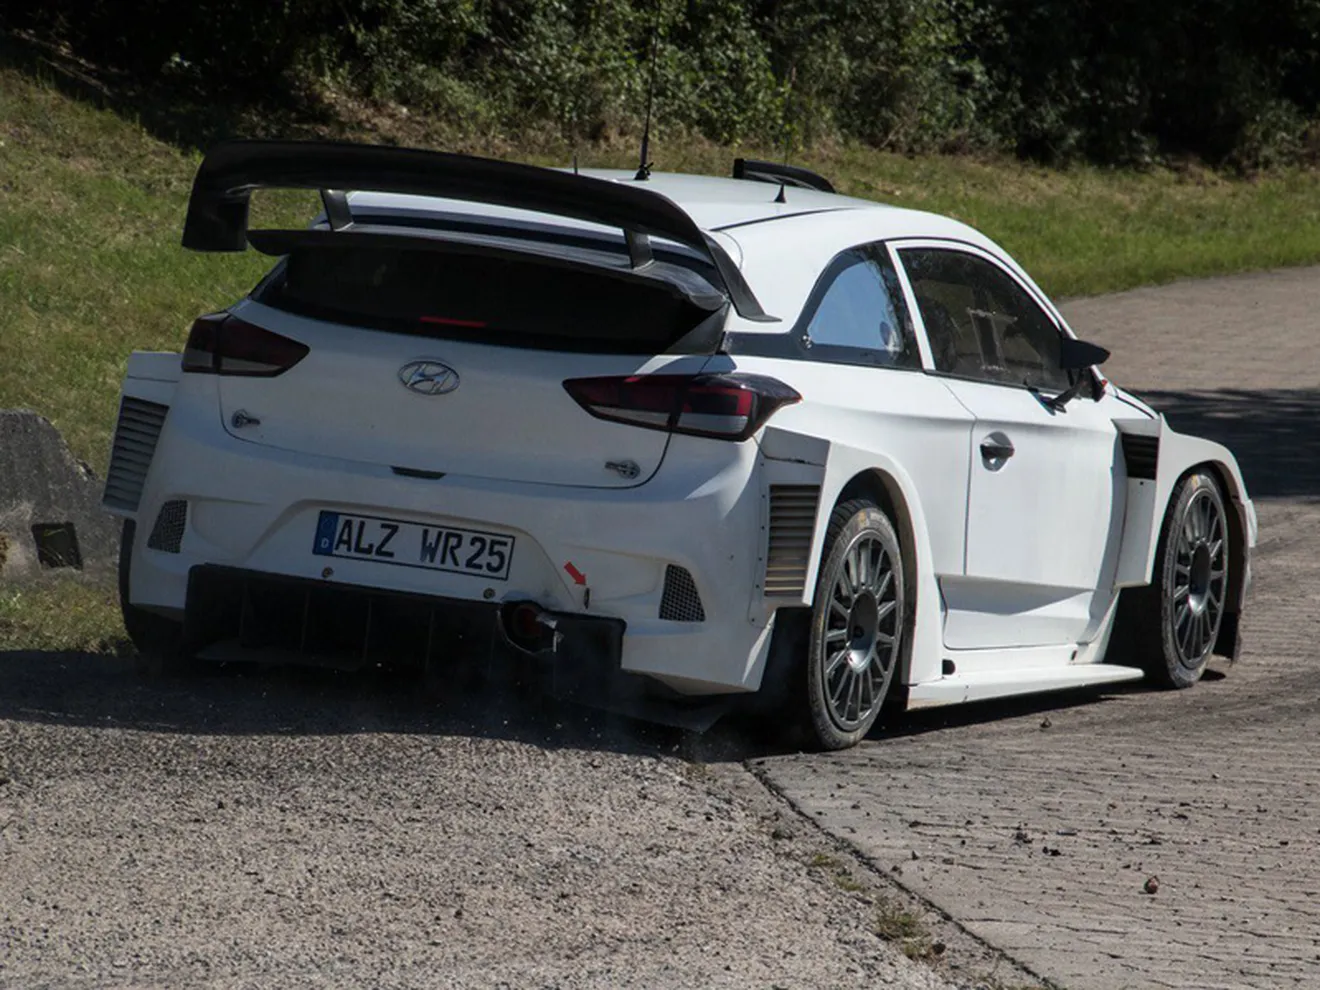 Dani Sordo y Hyundai inician los test del Rally de Alemania